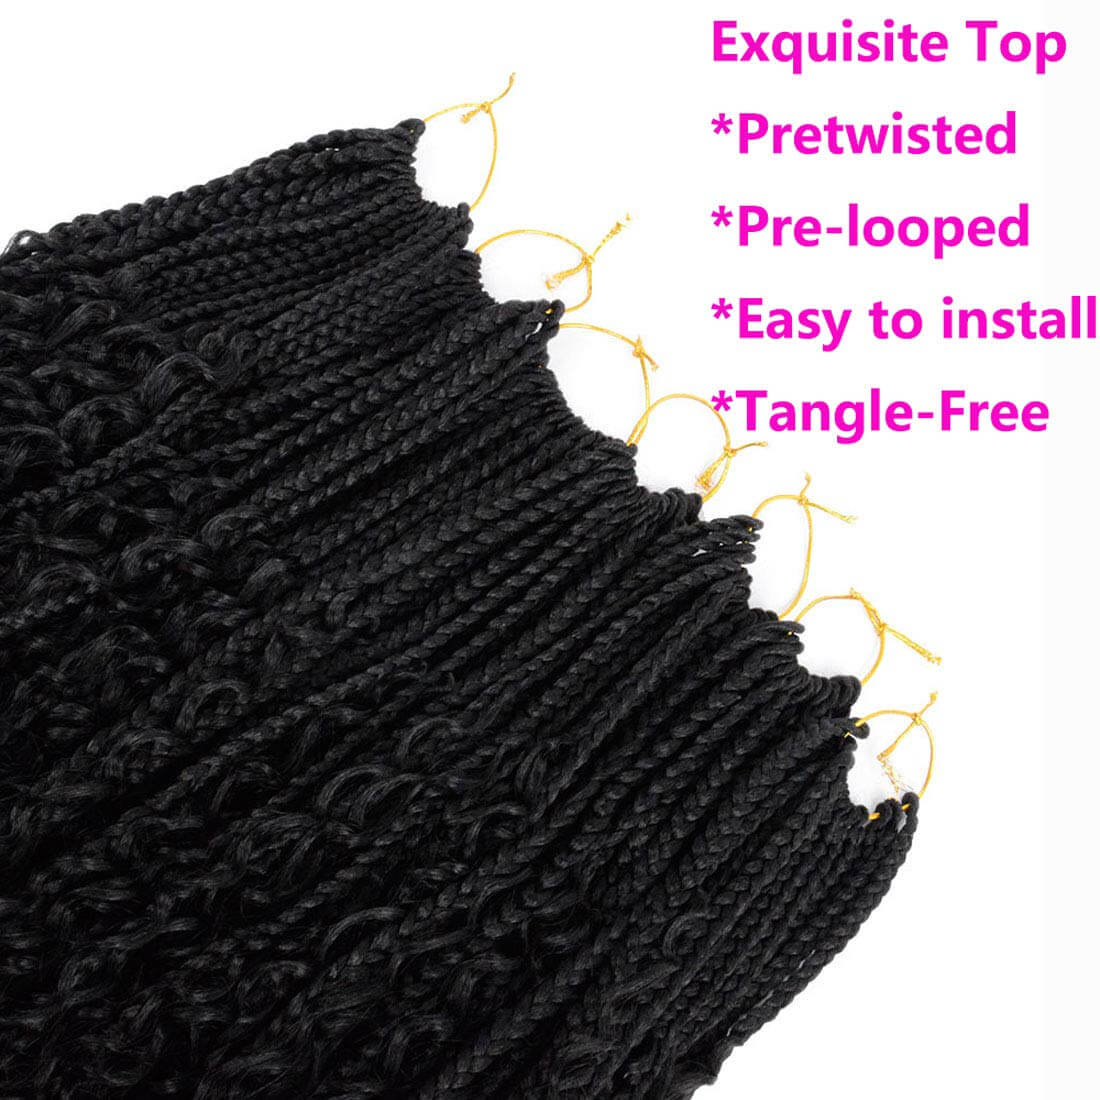 Box Braids 12 inch Crochet Hair Free Trees Top Show